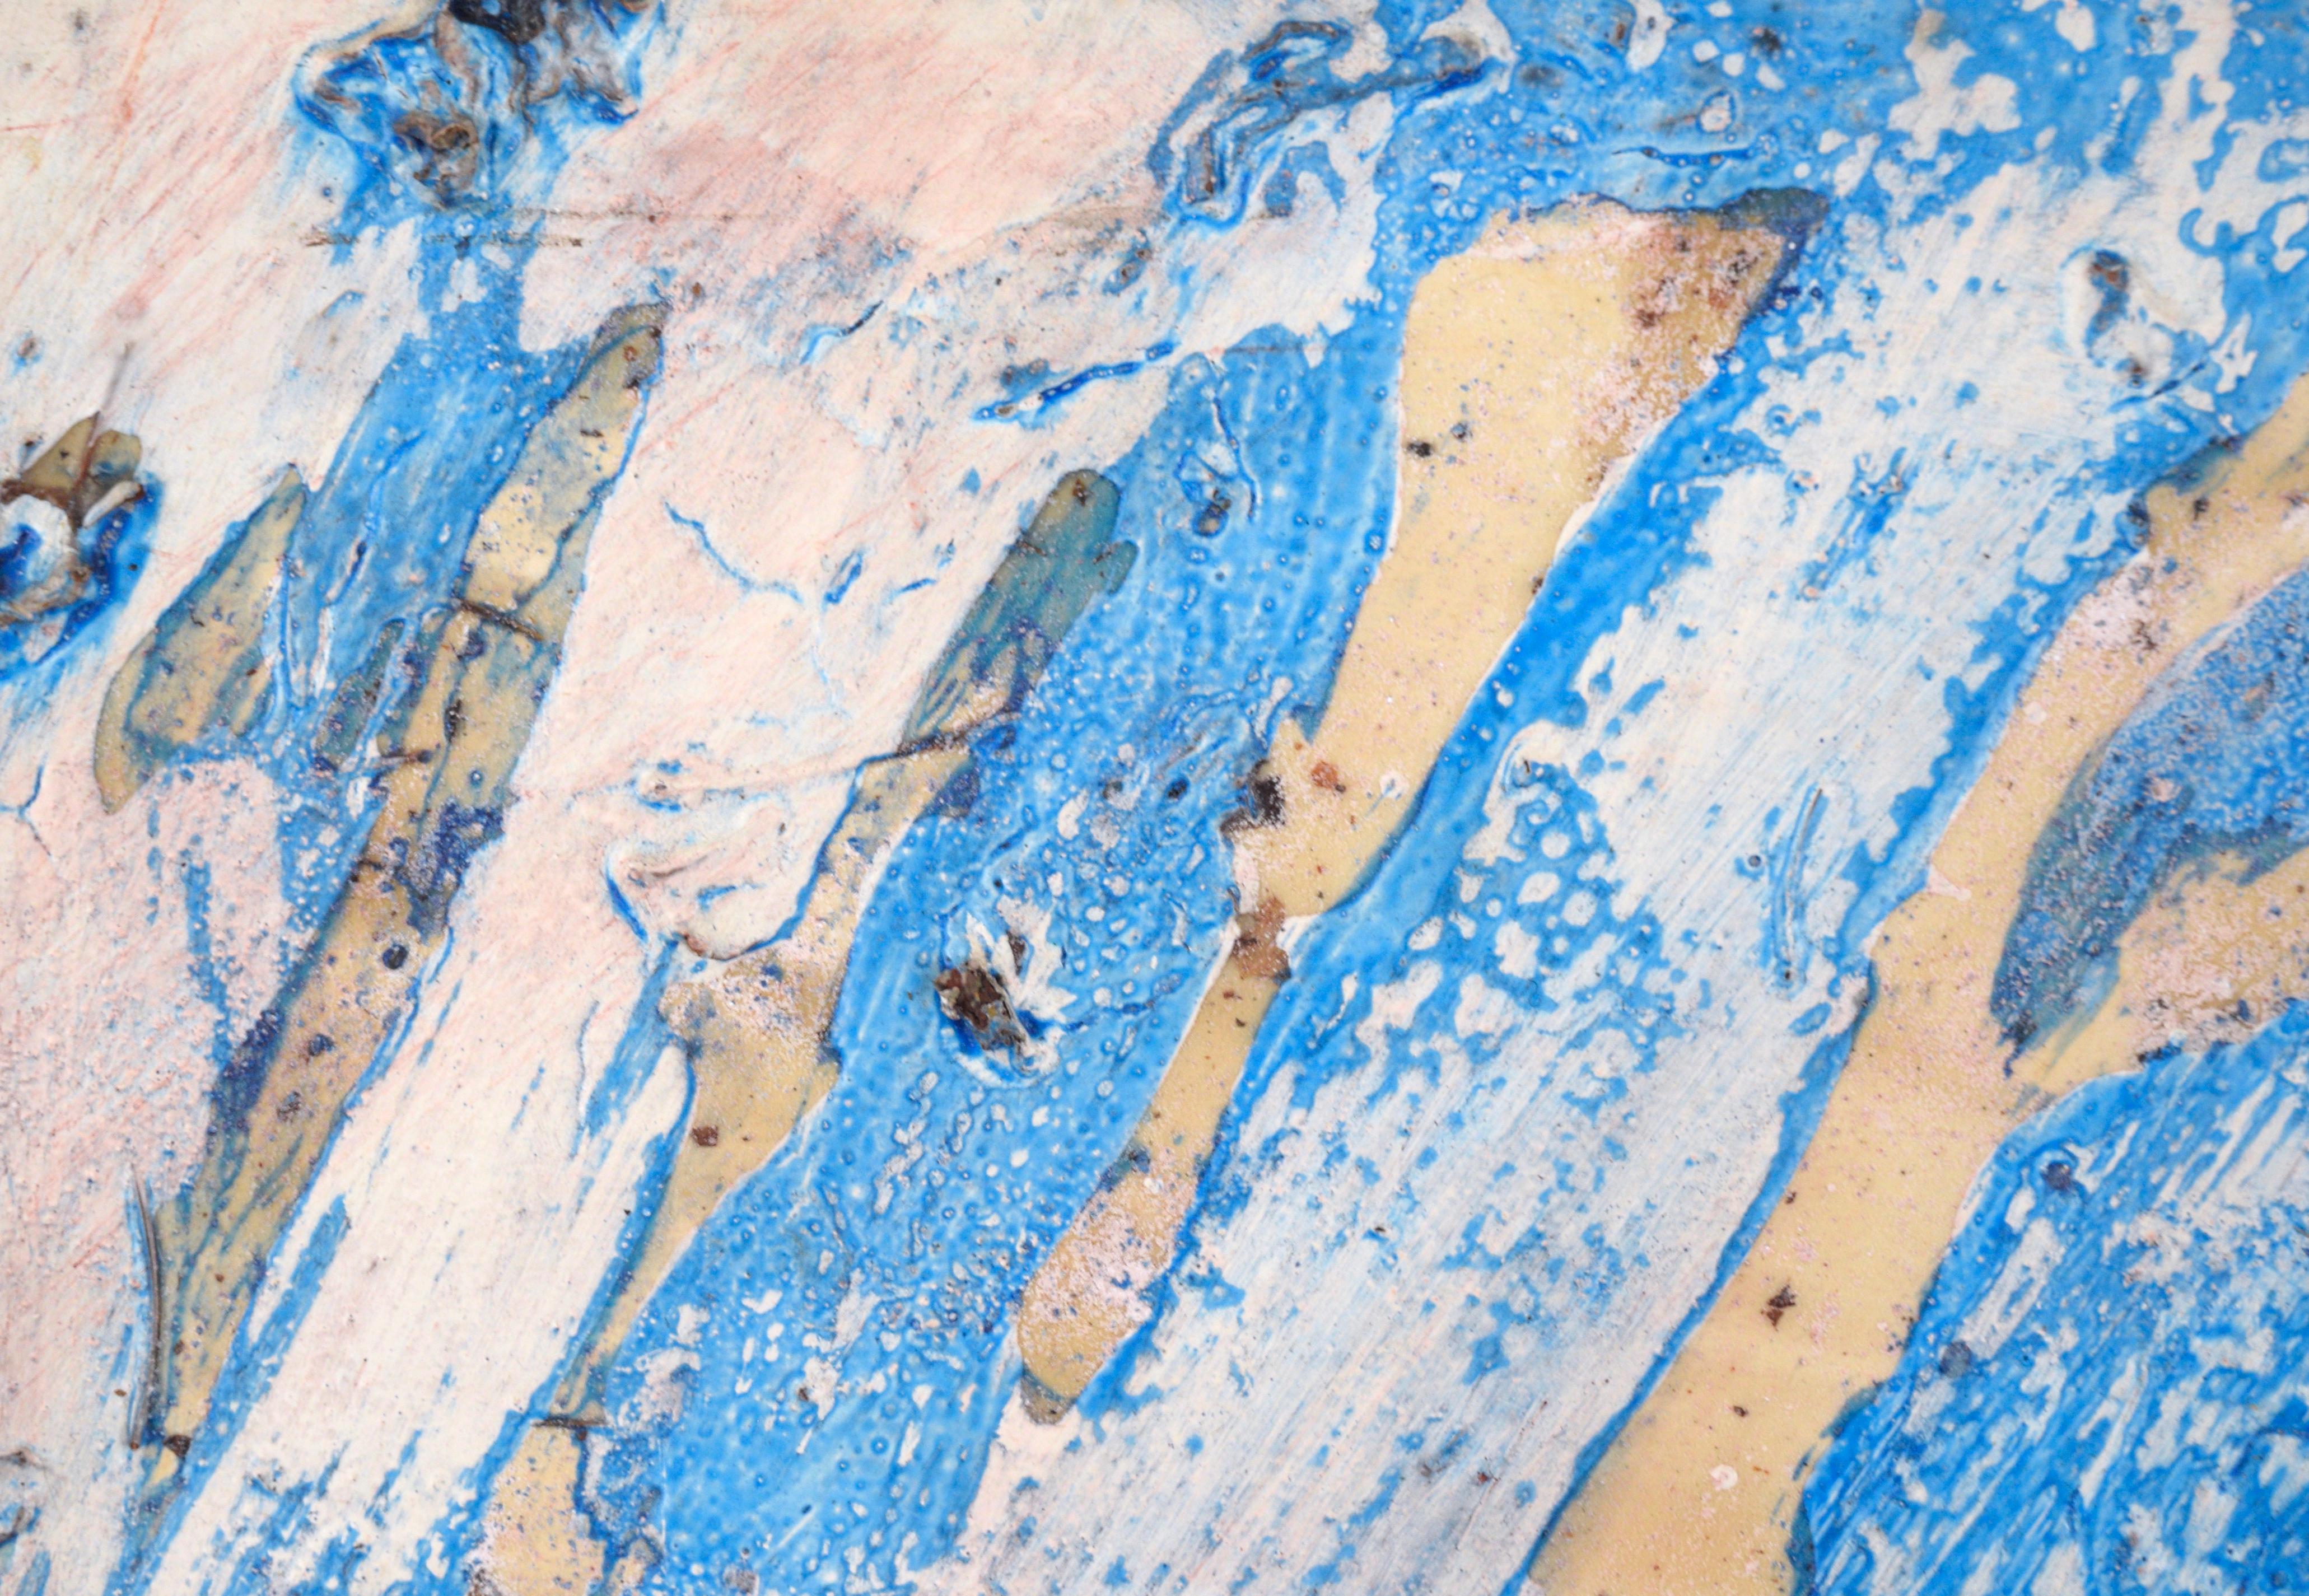 Composition très texturée d'un artiste inconnu (20e siècle). D'épaisses taches diagonales de bleu et de blanc sont superposées sur un fond blanc cassé dans un motif presque parallèle. Du sable, des fibres et d'autres éléments ont été ajoutés à la